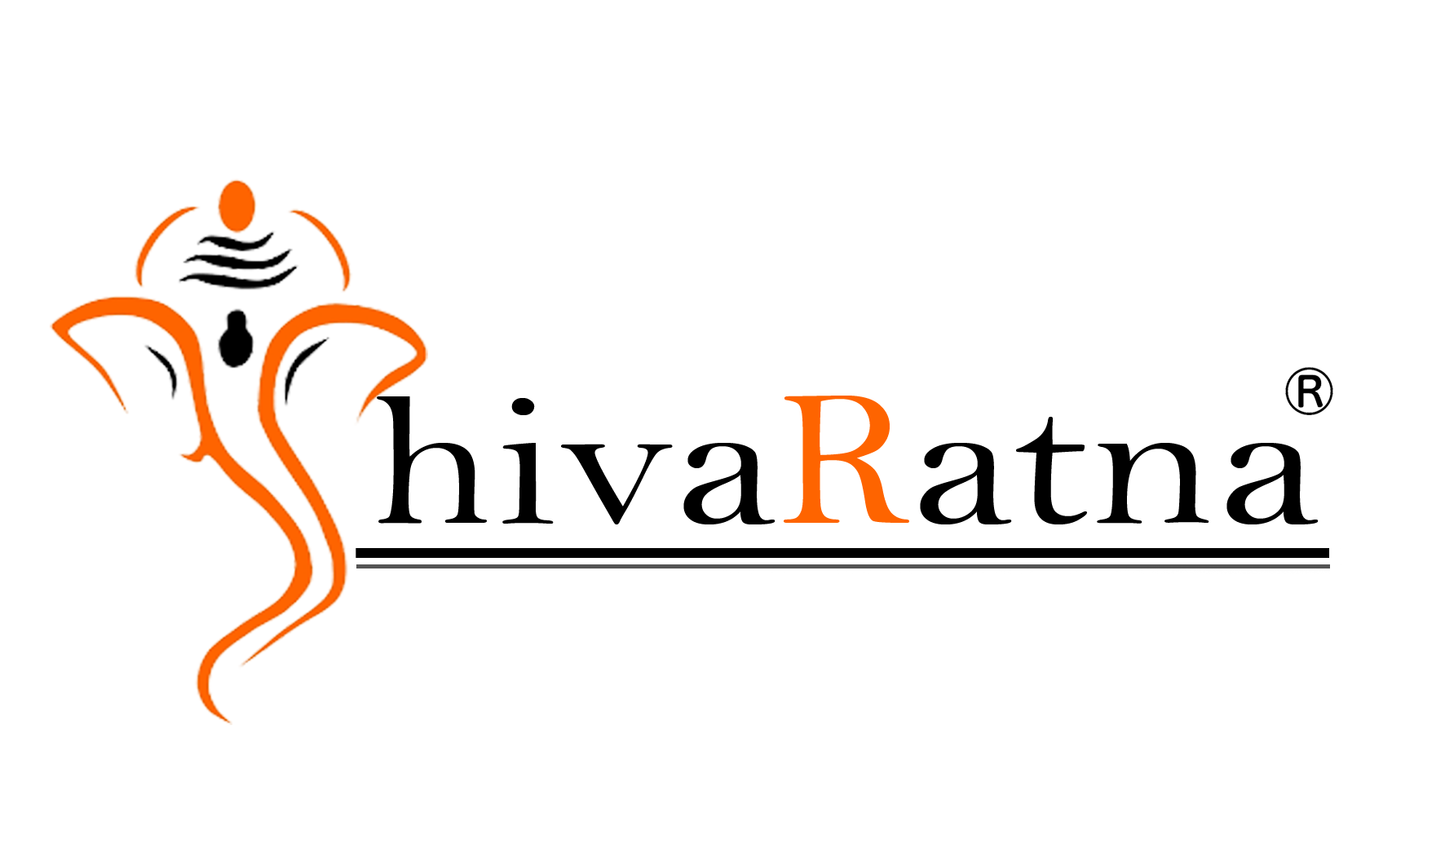 ShivaRatna Face Reading - ShivaRatna